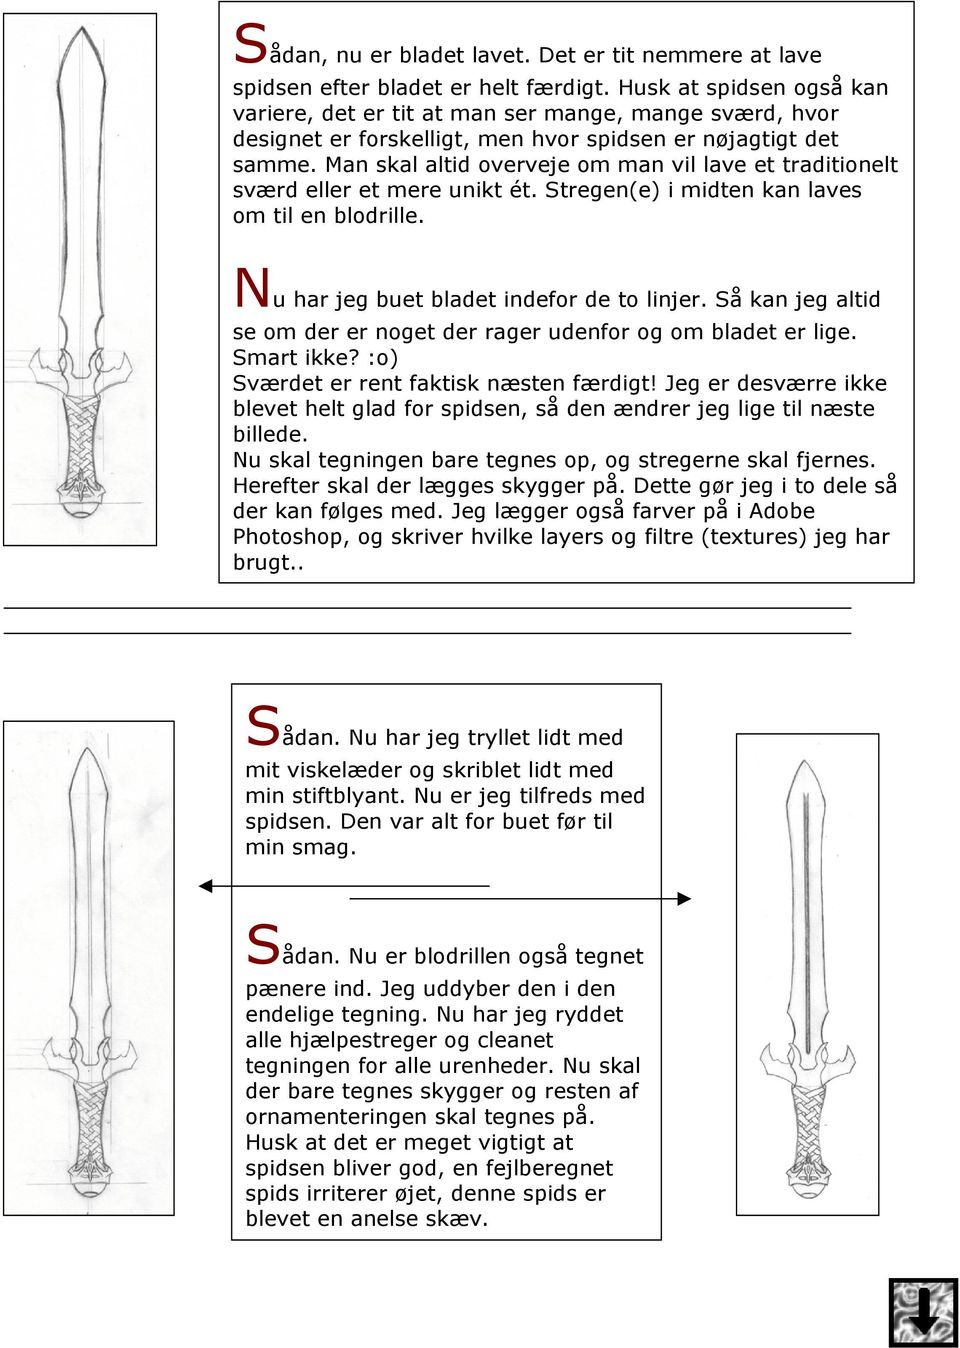 Man skal altid overveje om man vil lave et traditionelt sværd eller et mere unikt ét. Stregen(e) i midten kan laves om til en blodrille. Nu har jeg buet bladet indefor de to linjer.